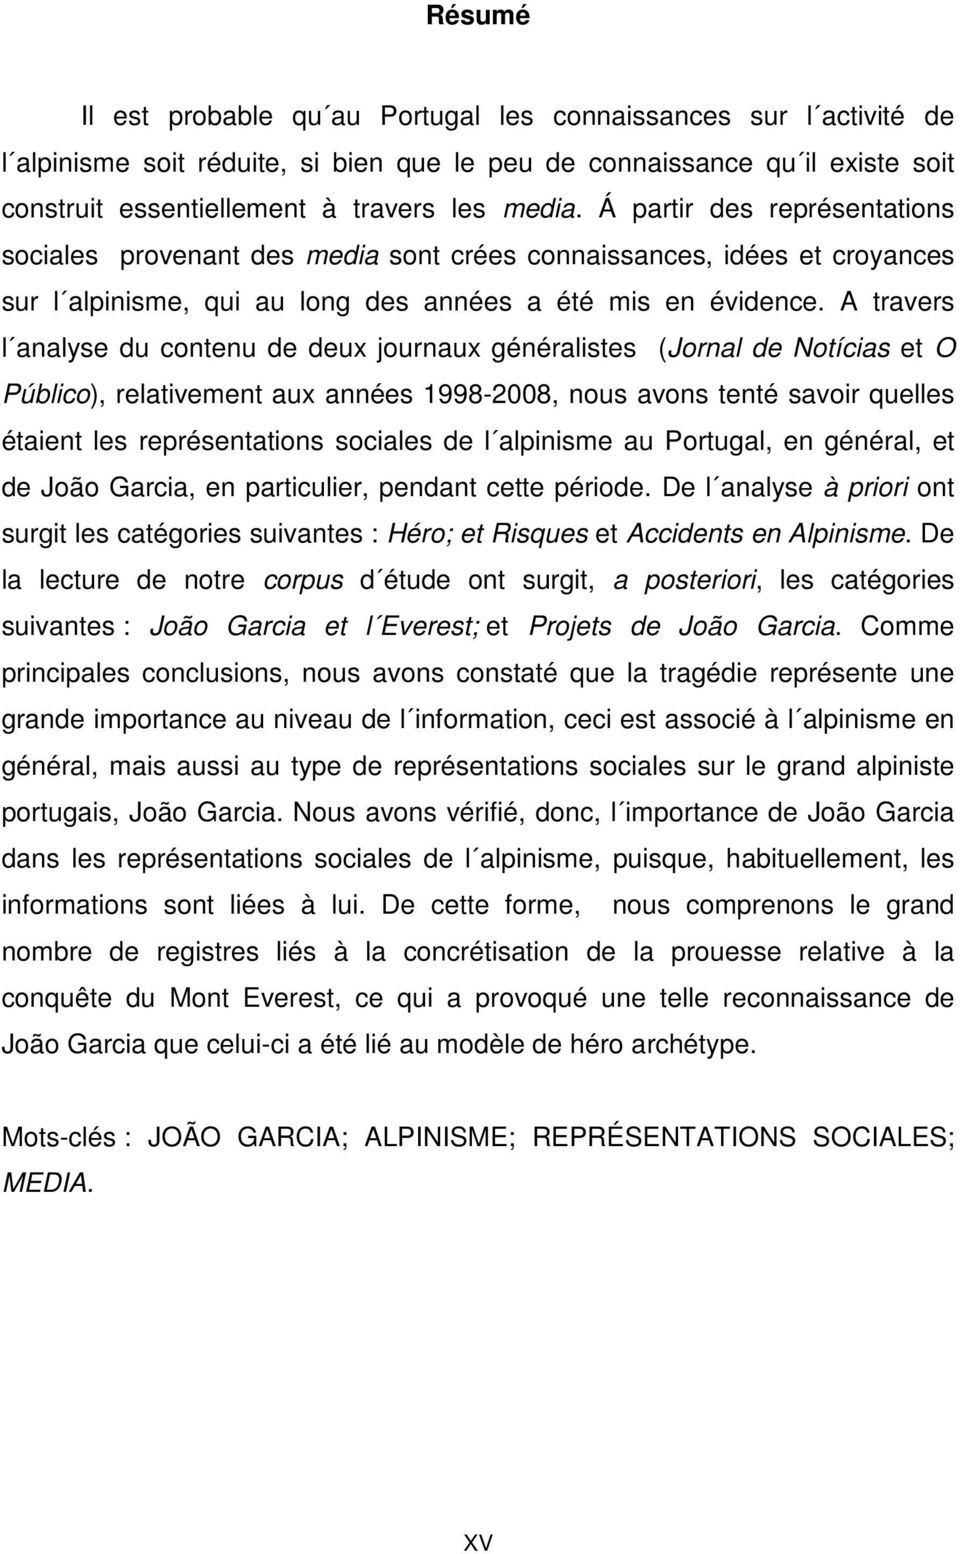 A travers l analyse du contenu de deux journaux généralistes (Jornal de Notícias et O Público), relativement aux années 1998-2008, nous avons tenté savoir quelles étaient les représentations sociales